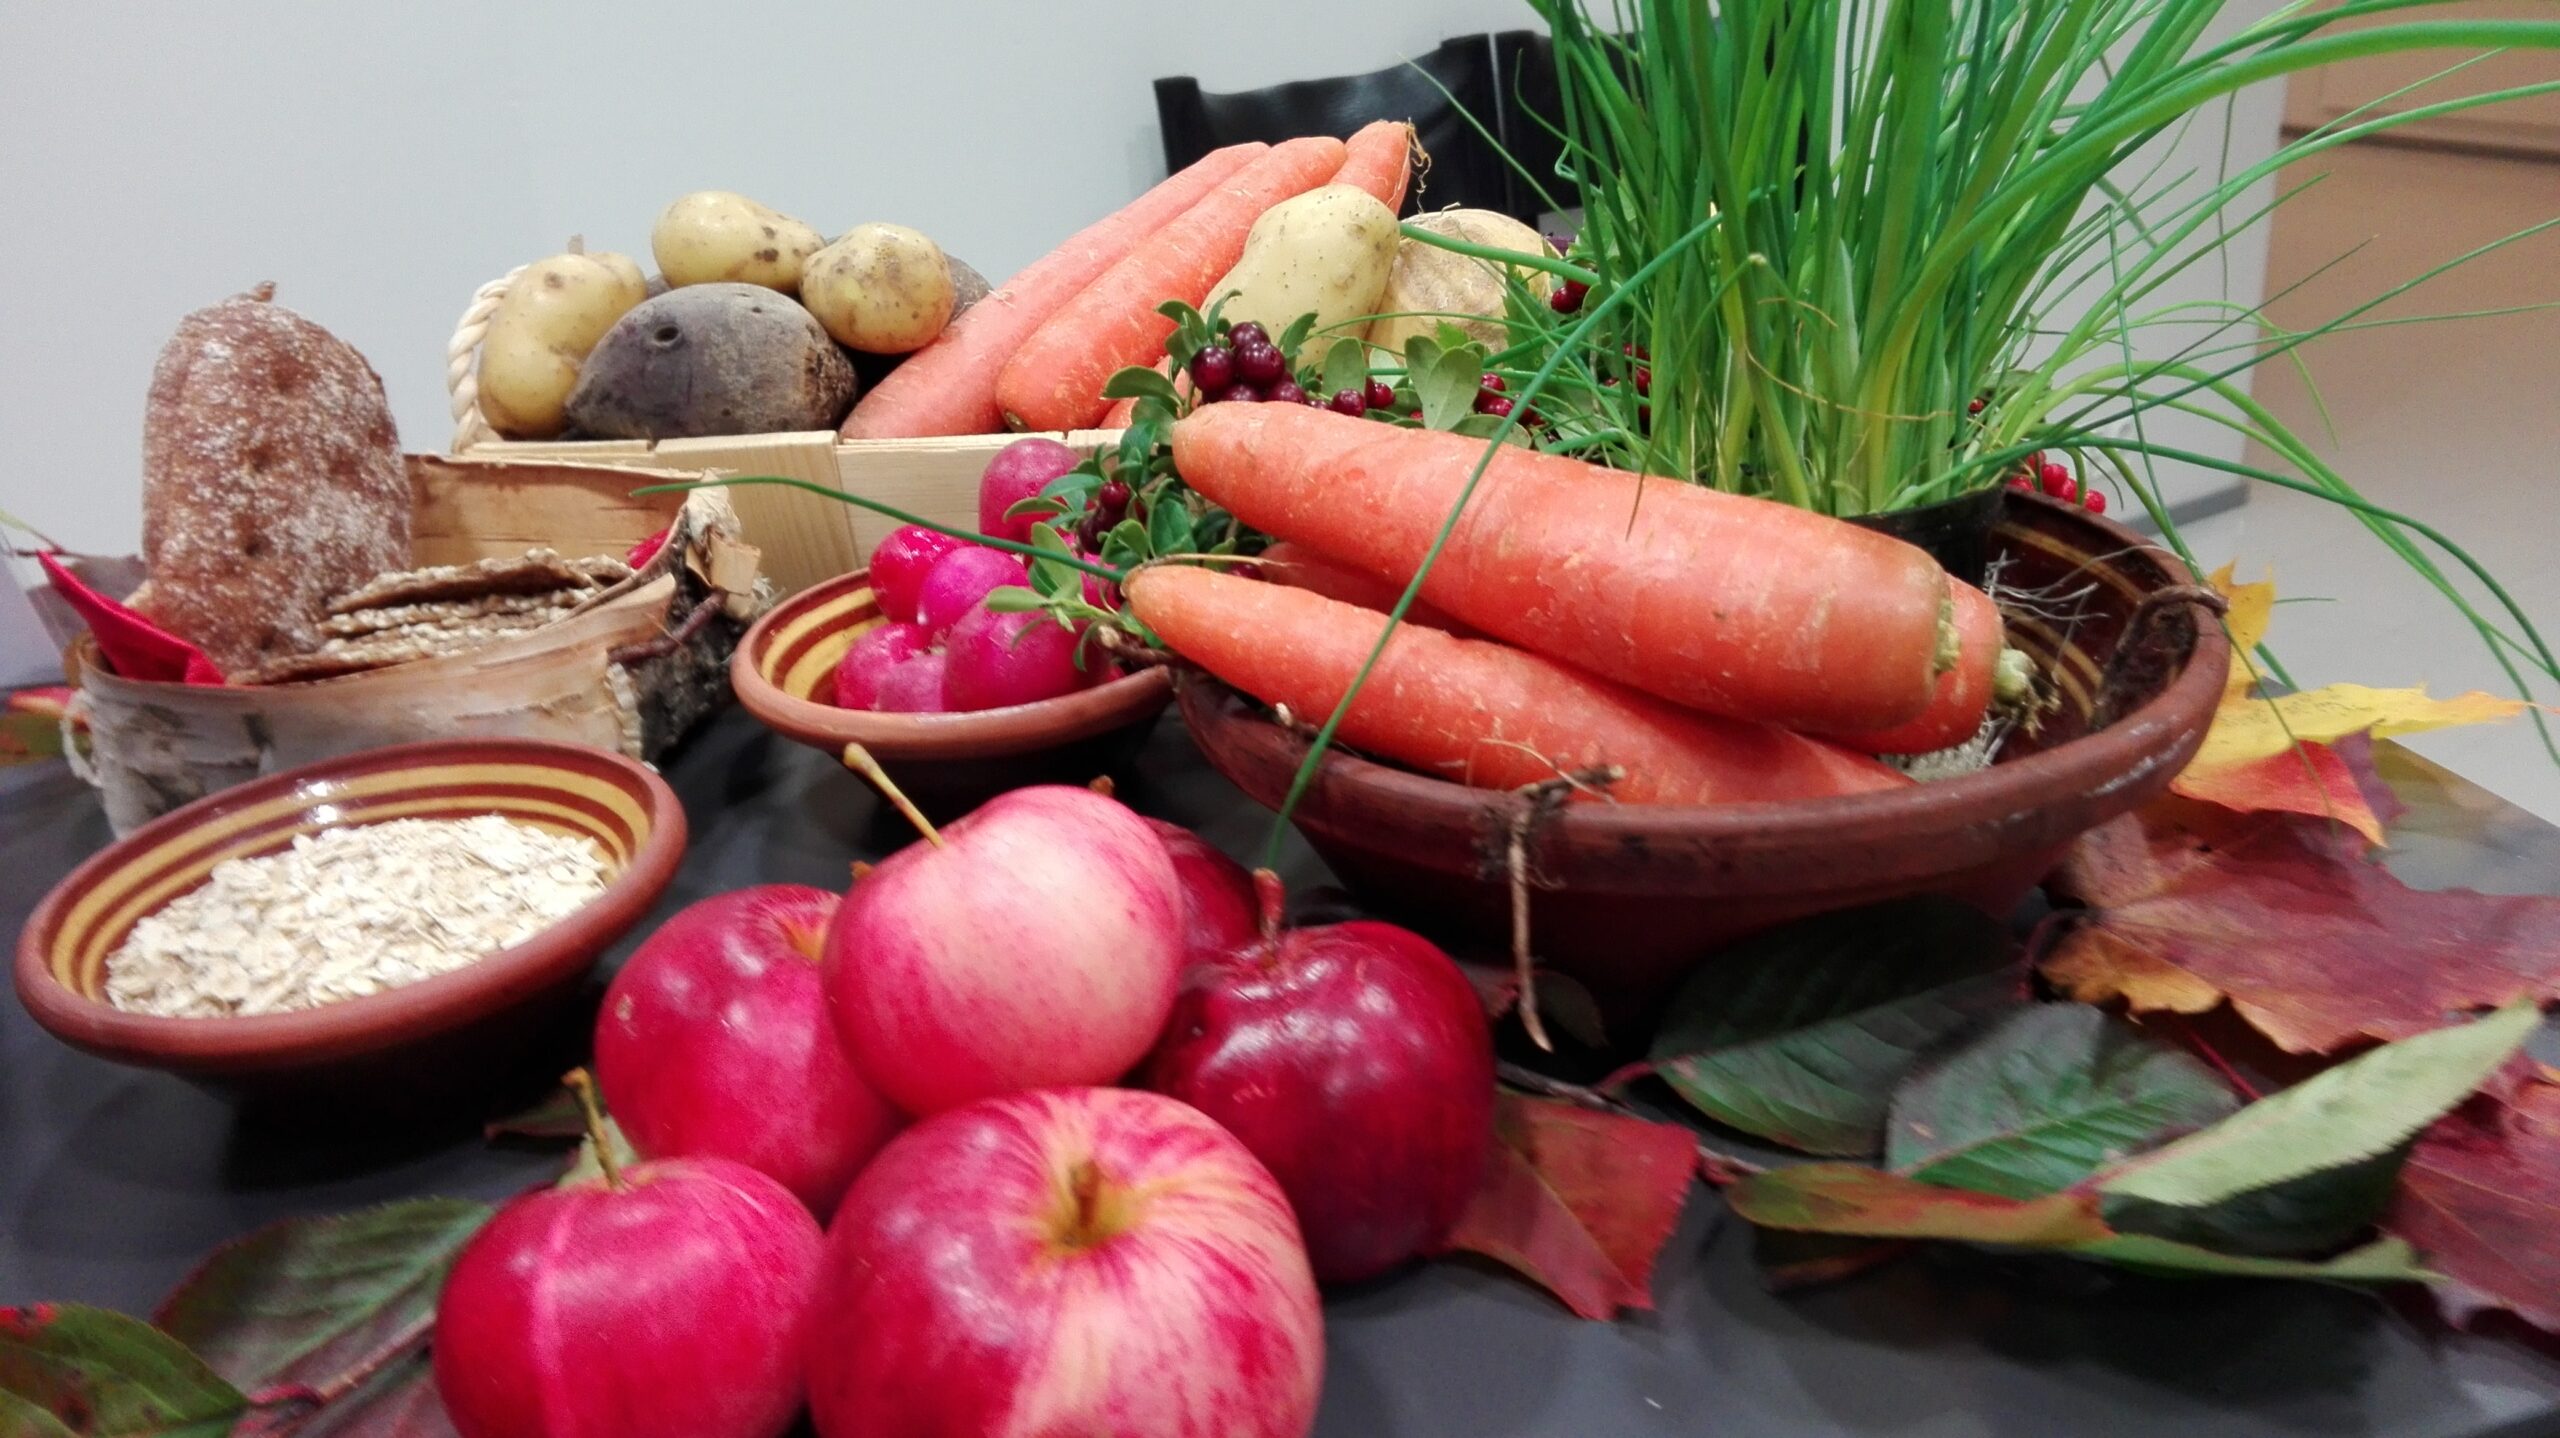 Porkkanoita, omenia, puolukoita, retiisejä ja muita kasviksia sekä leipää ja kaurahiutaleita pöydällä ja kulhoissa.